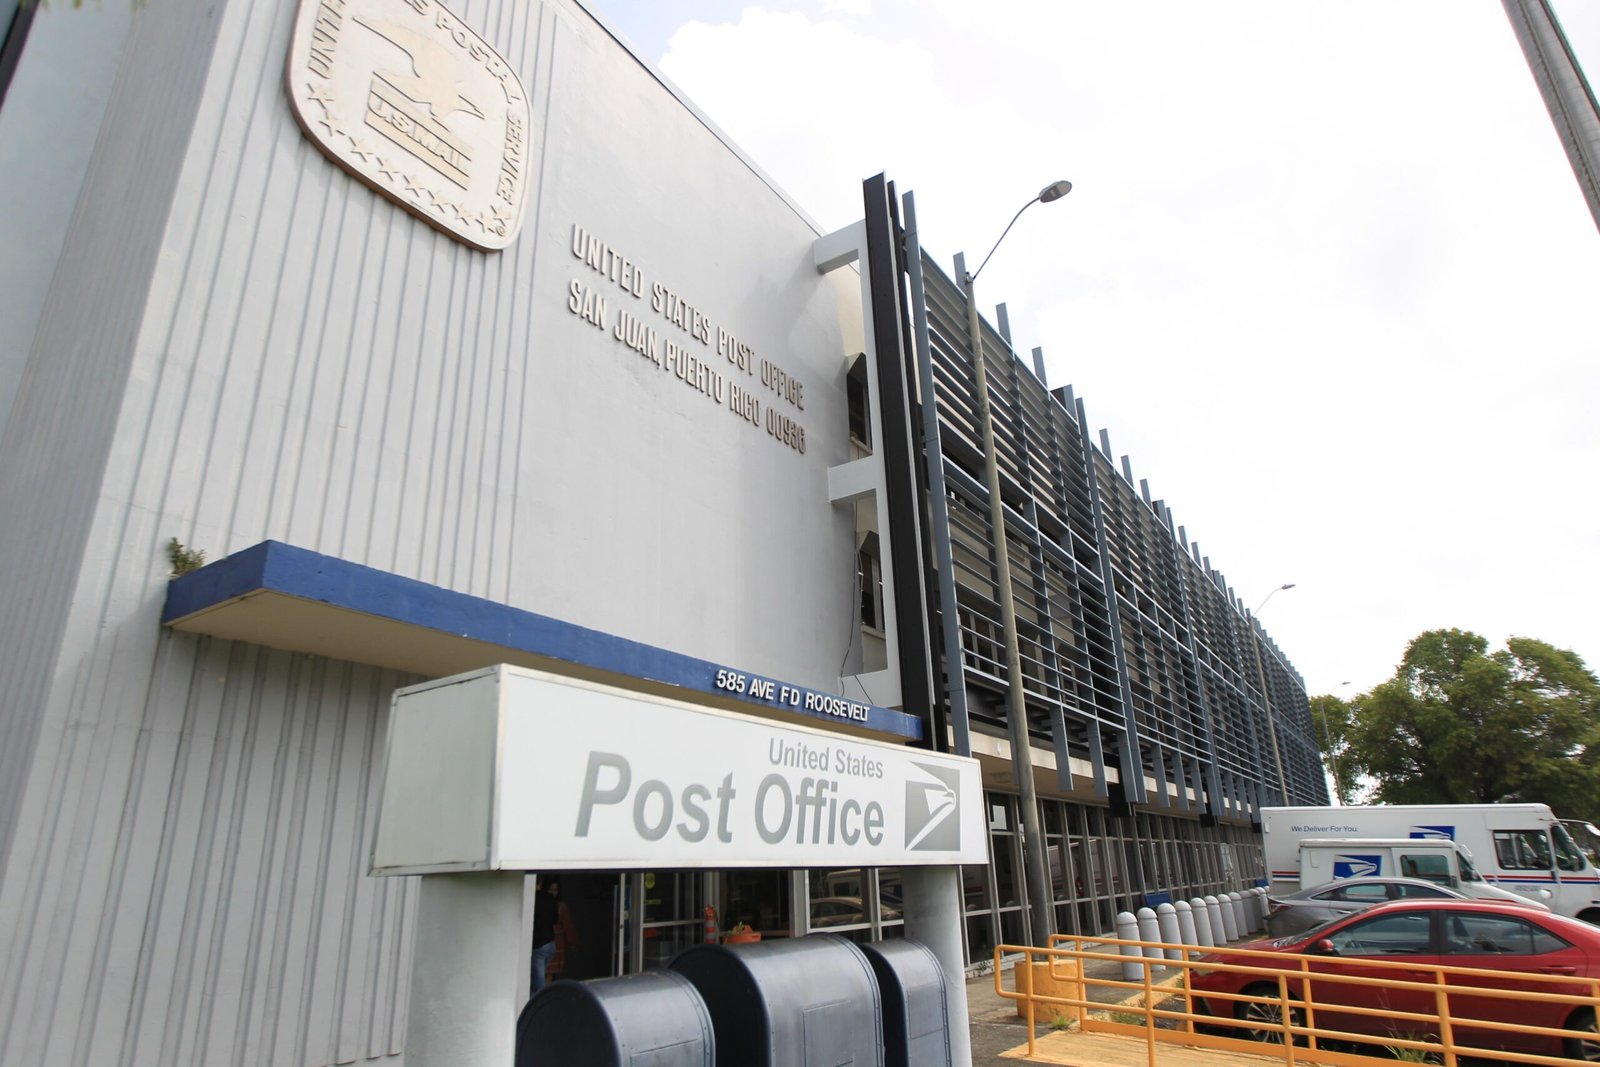 oficina de correos en puerto rico 1 scaled